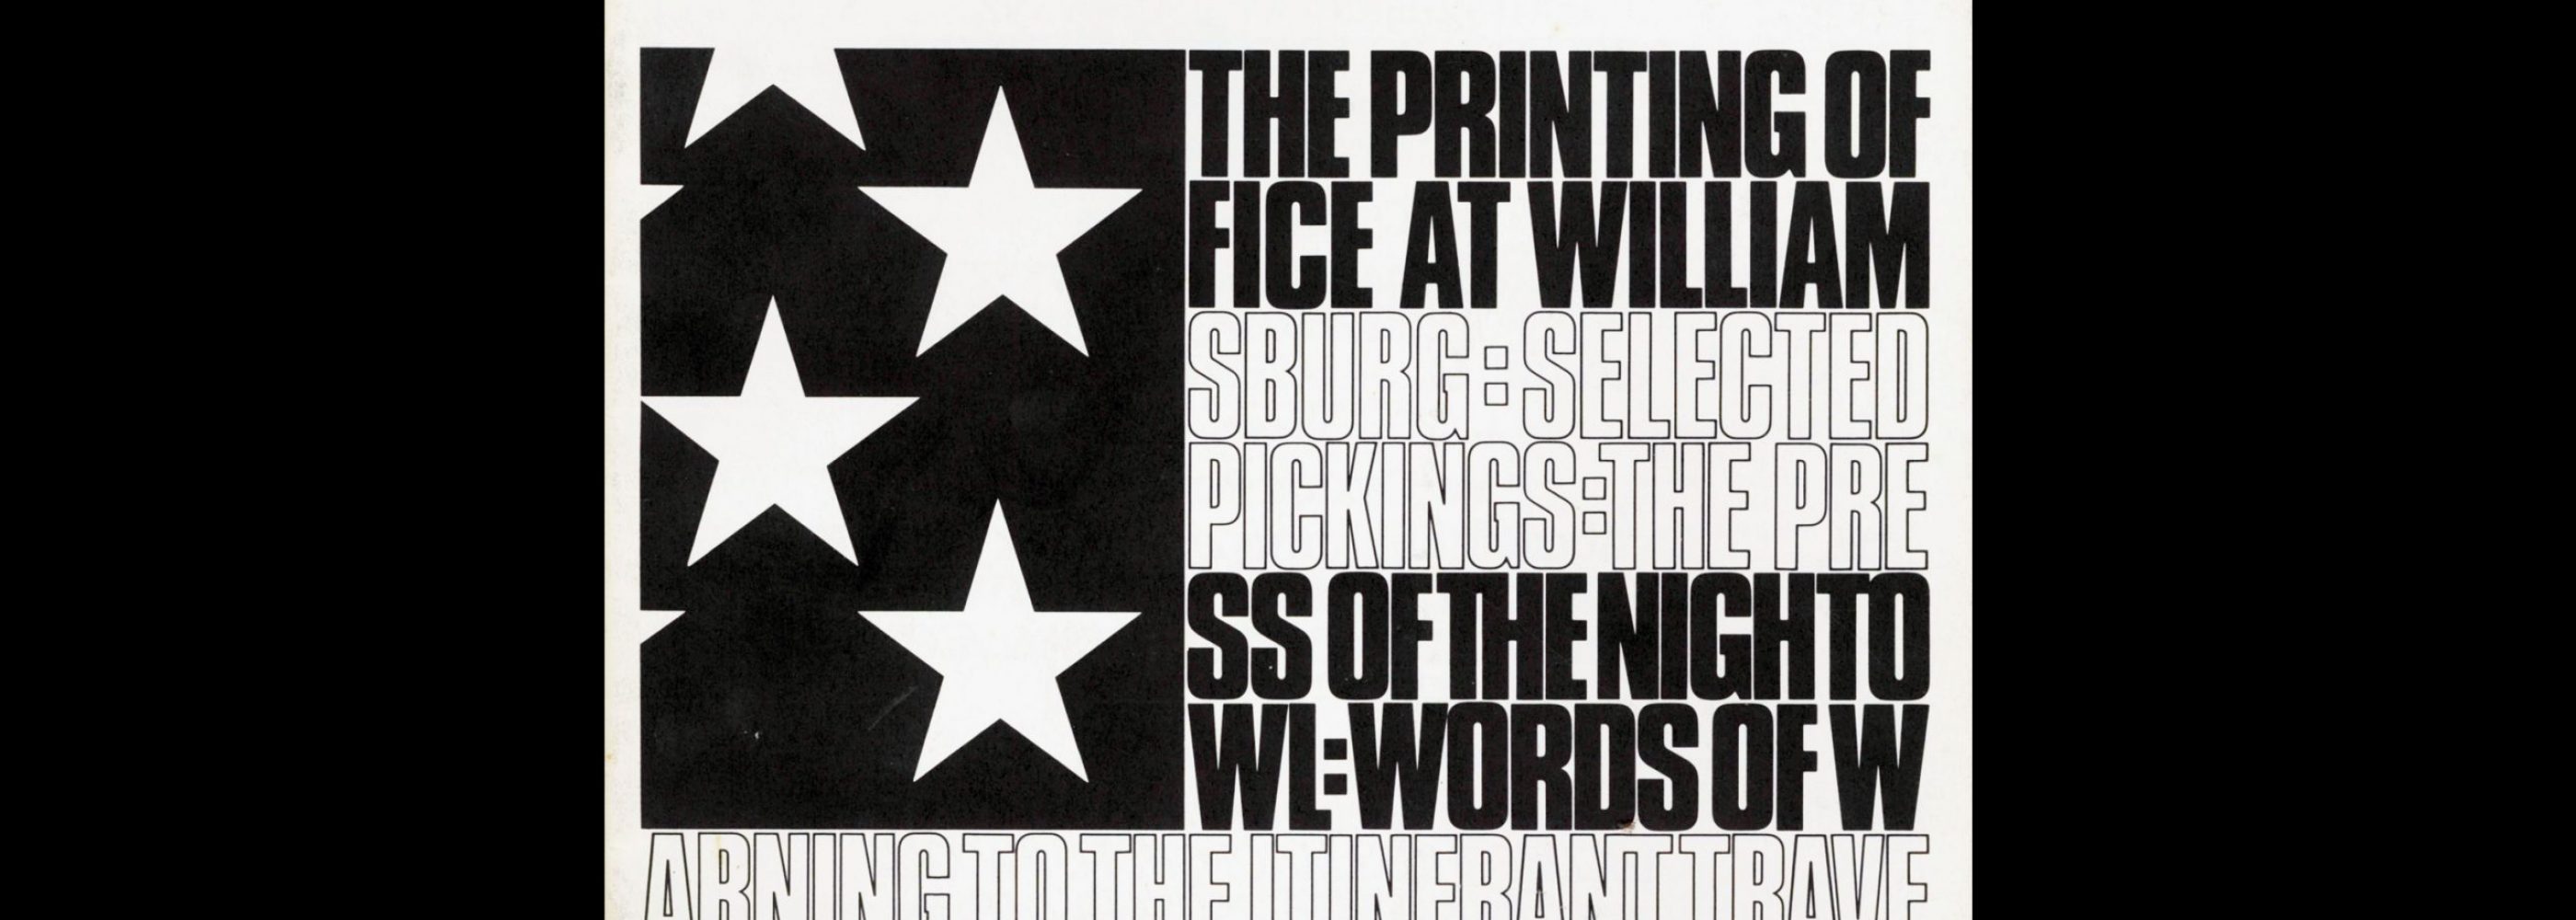 Typographic, 17, November 1981